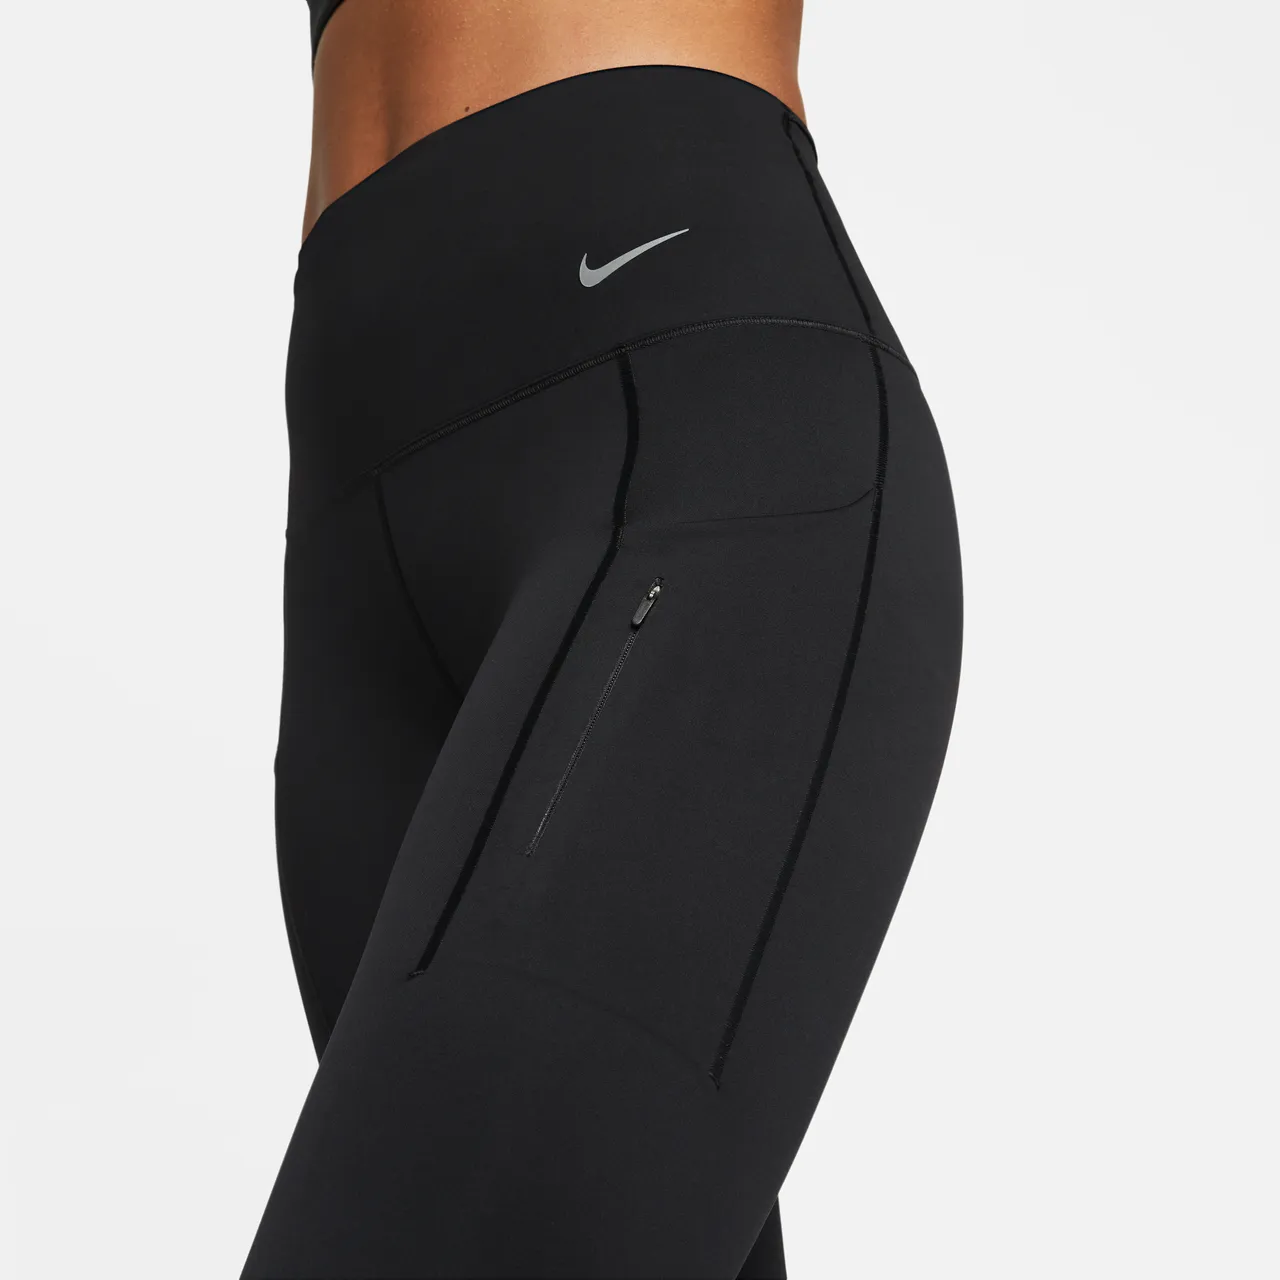 Nike Go Women's Firm-Support High-Waisted Full-Length Leggings with Pockets - Black - Nylon